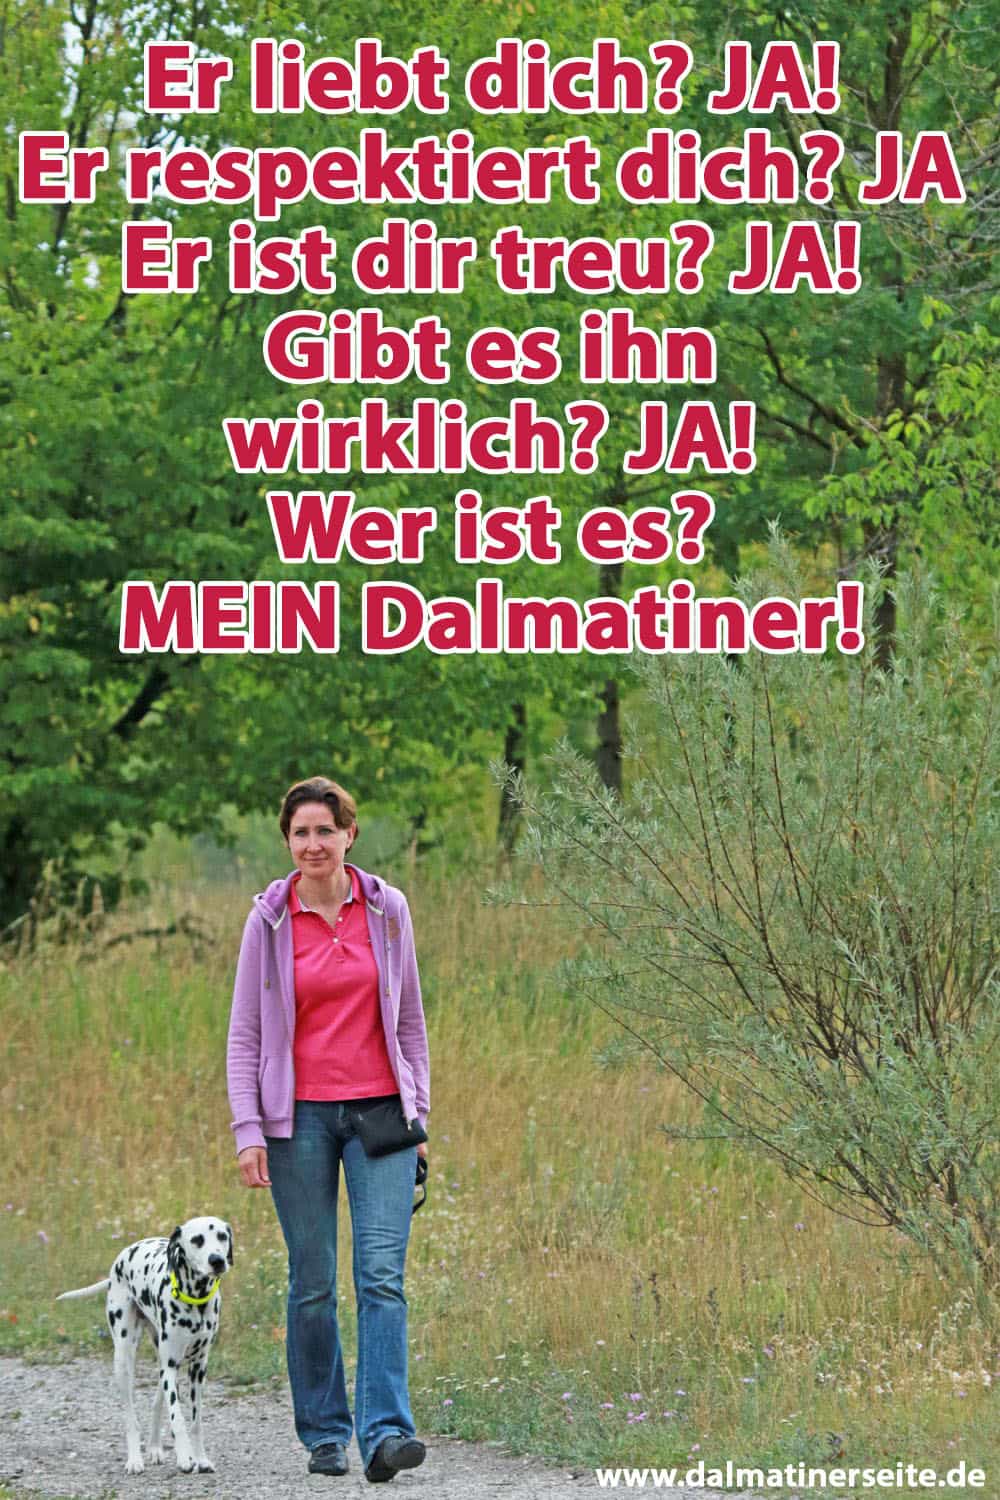 Eine Frau geht mit ihrem Dalmatiner im Wald